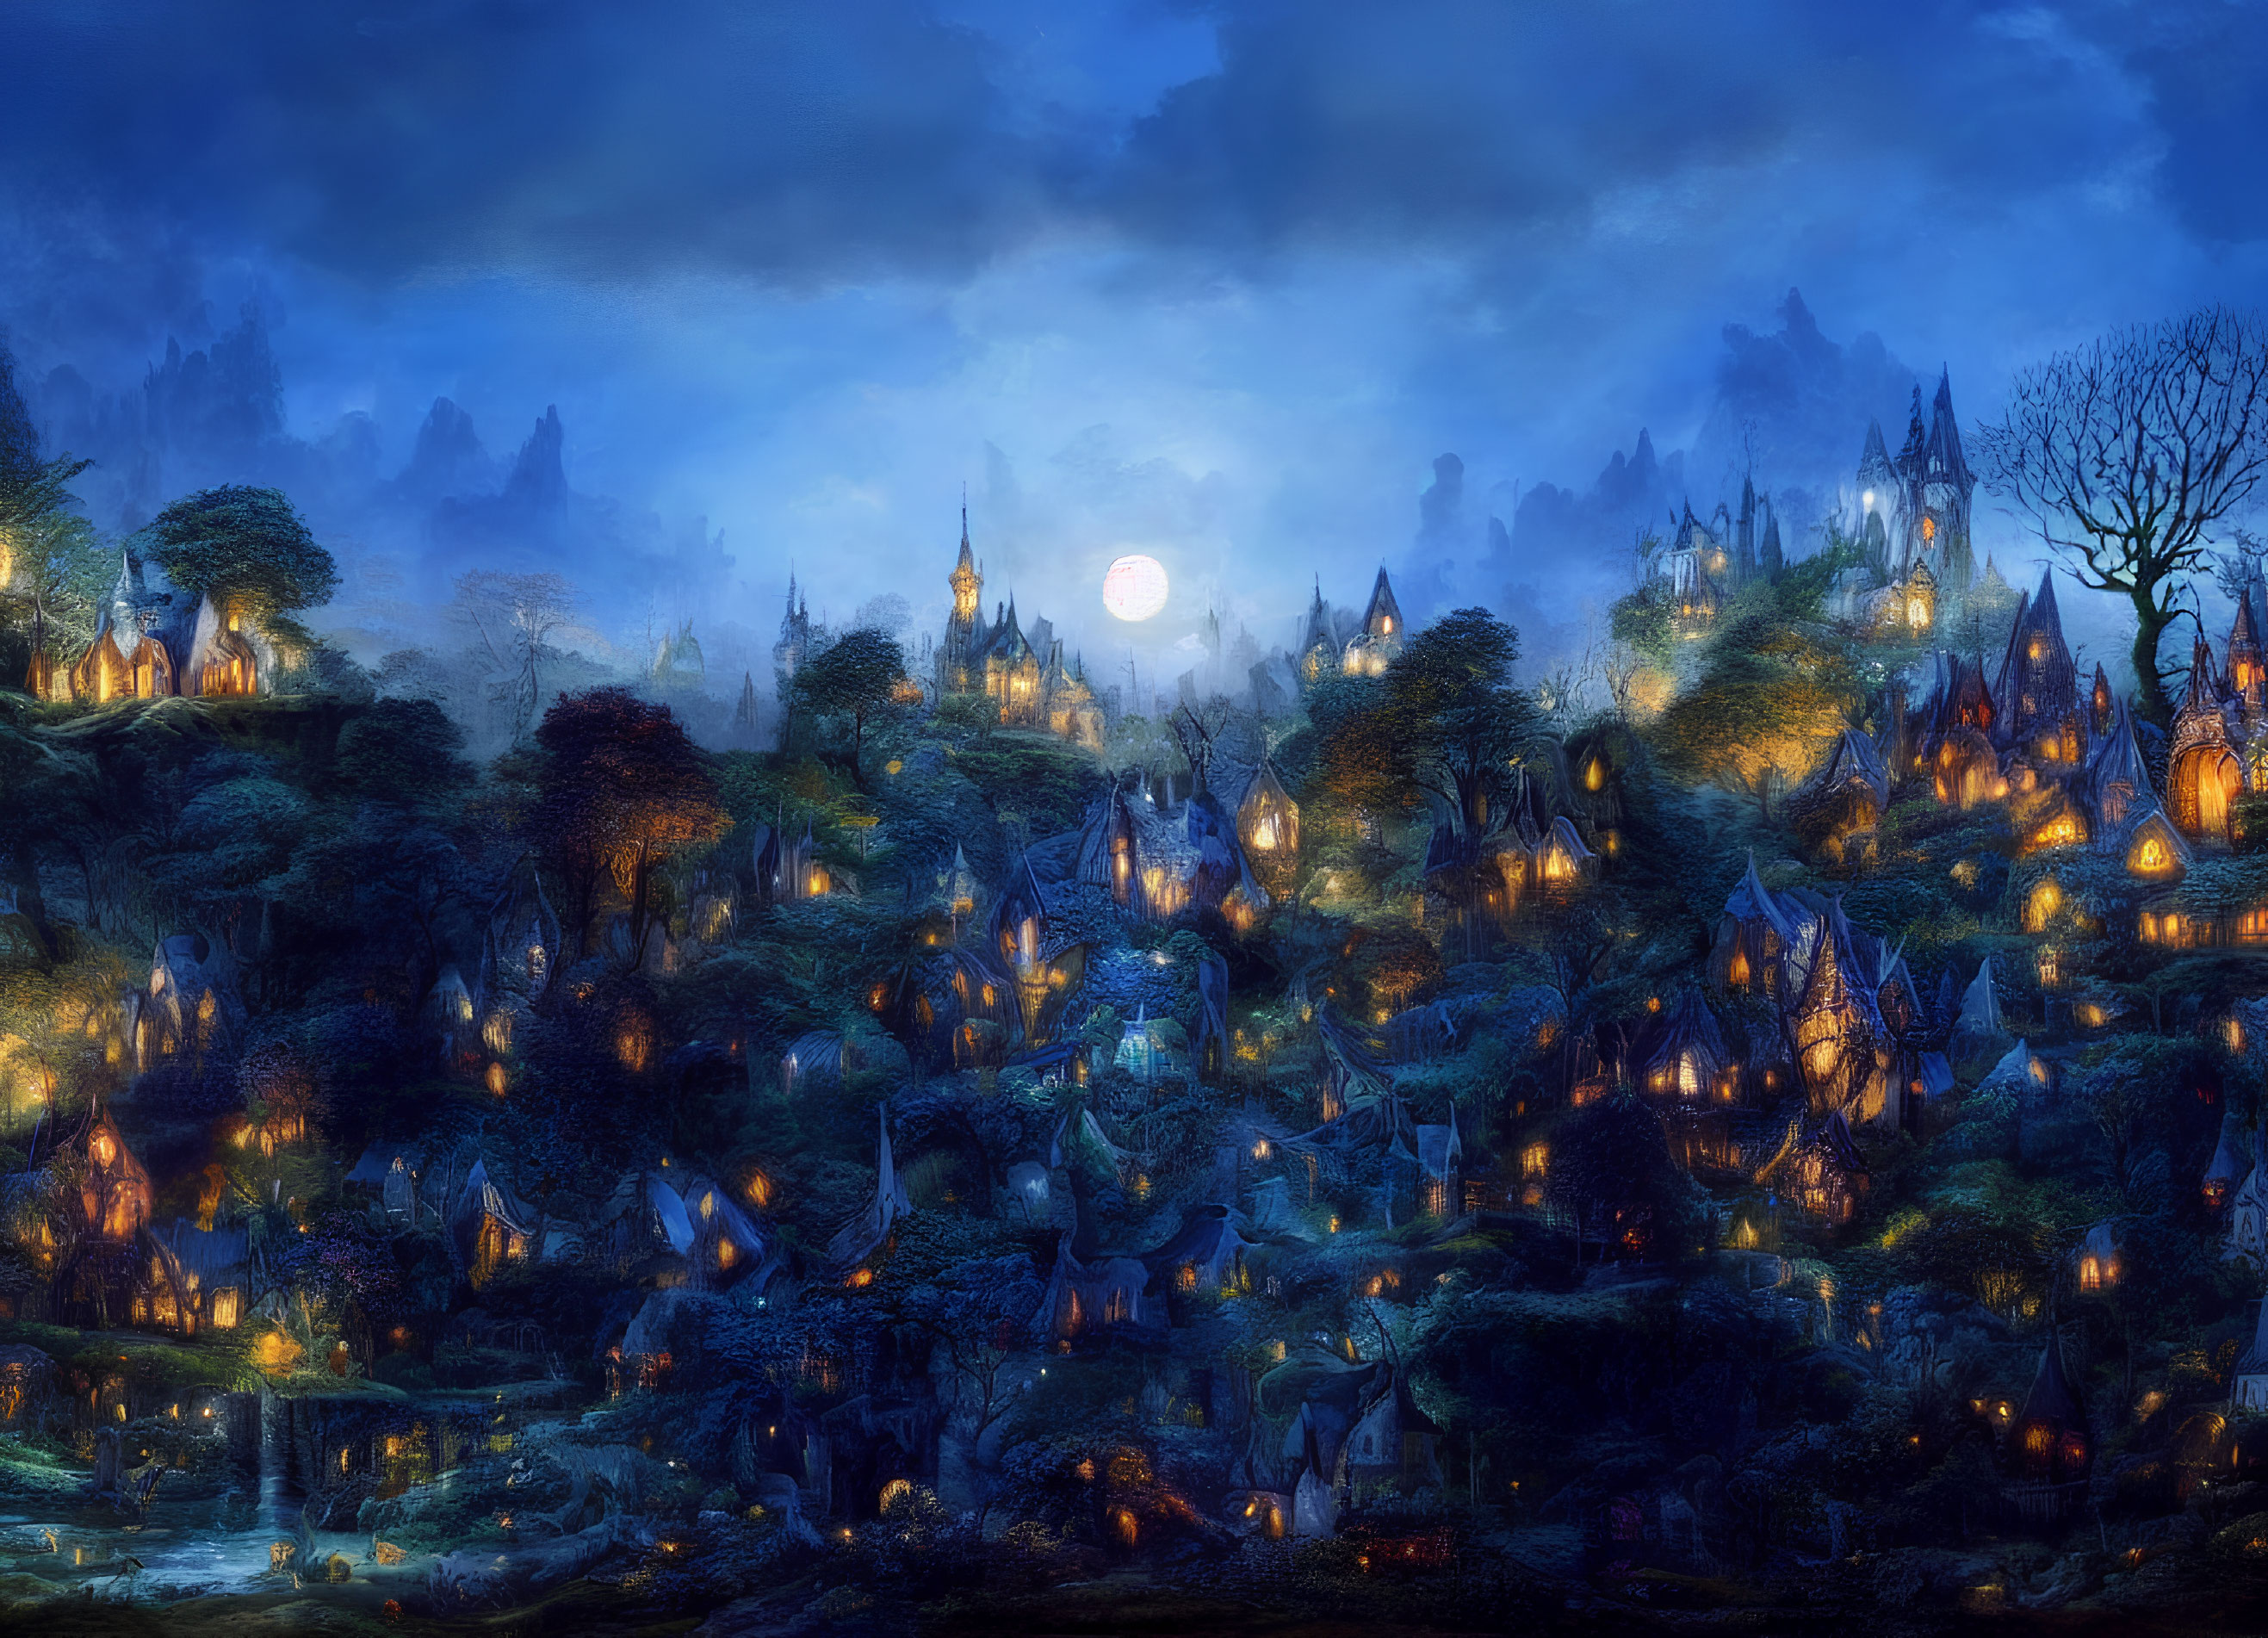 Mystical village in moonlit nocturnal landscape